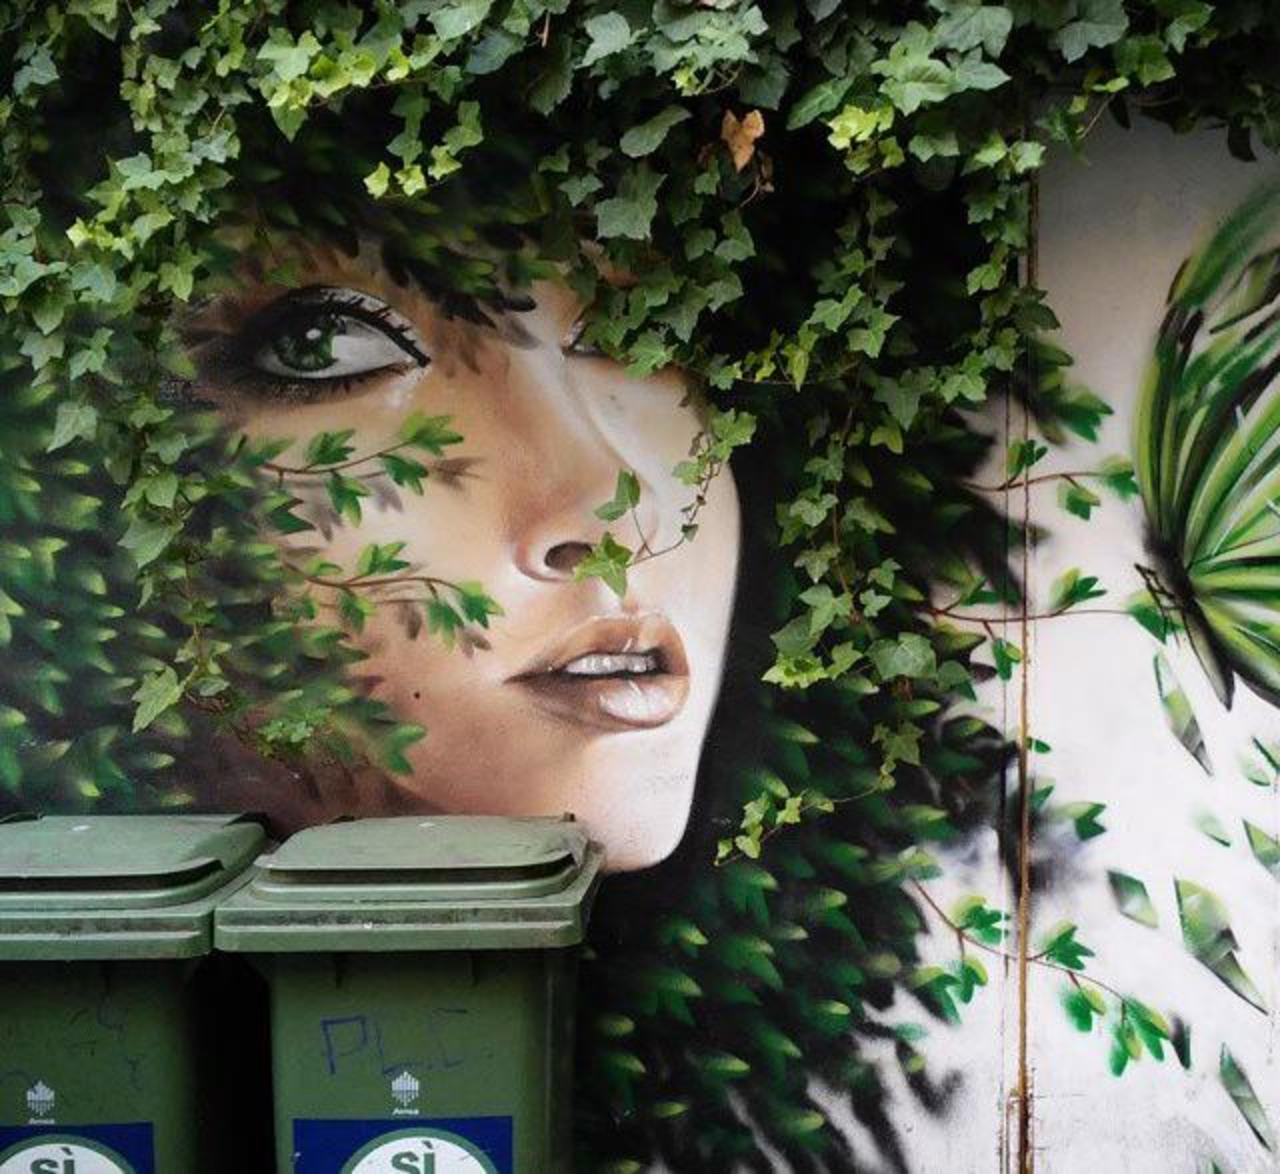 When Street Art meets nature by Dasxa in Isola, Millan 

#art #arte #graffiti #streetart http://t.co/6XP0txKgLn